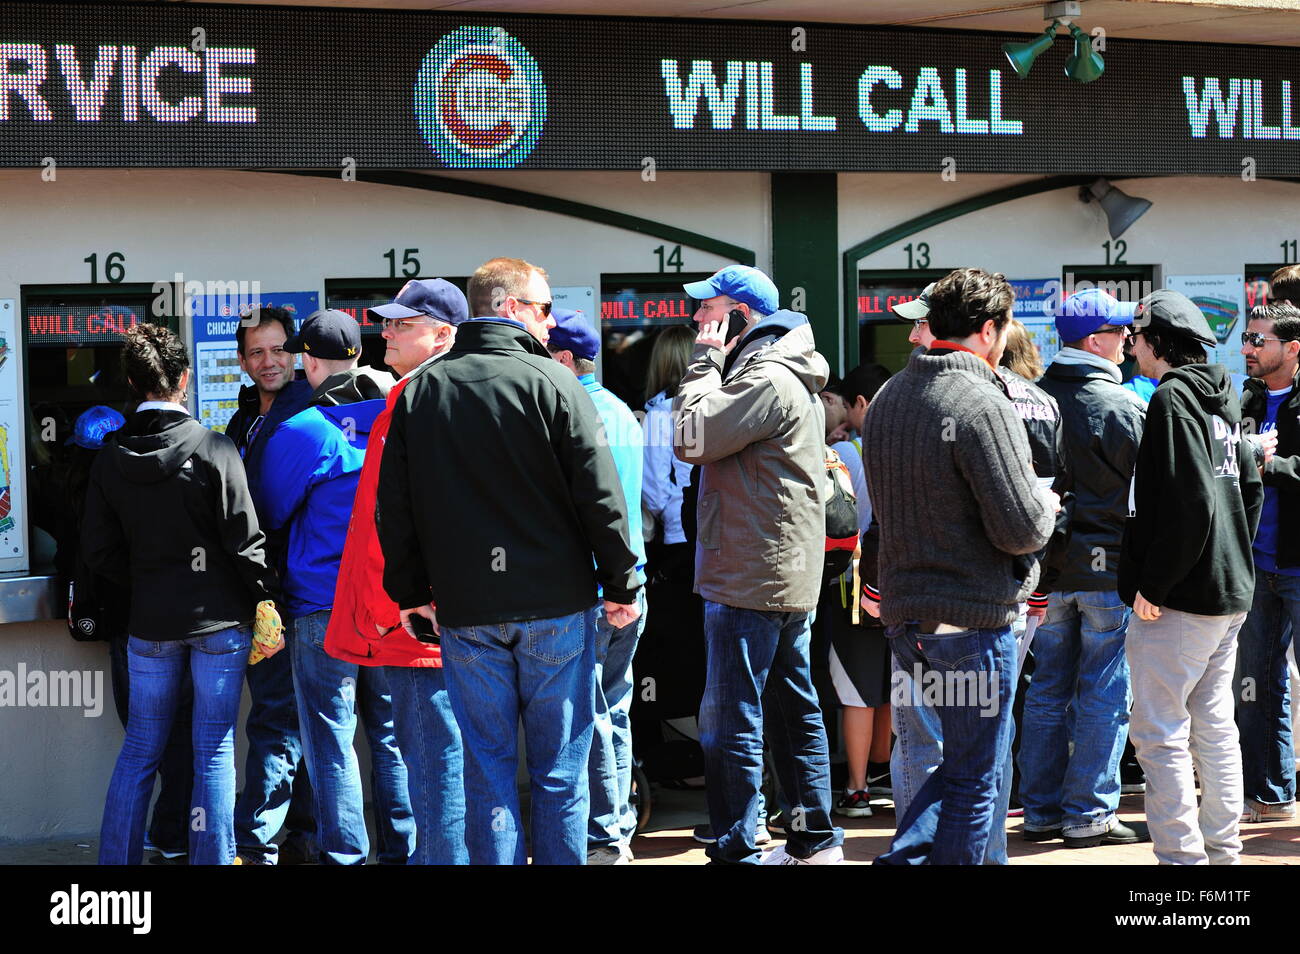 Ligne des fans jusqu'à acheter ou ramasser les billets pour entrer célèbre Wrigley Field, stade des Chicago Cubs avant un match de baseball. Chicago, Illinois, USA. Banque D'Images